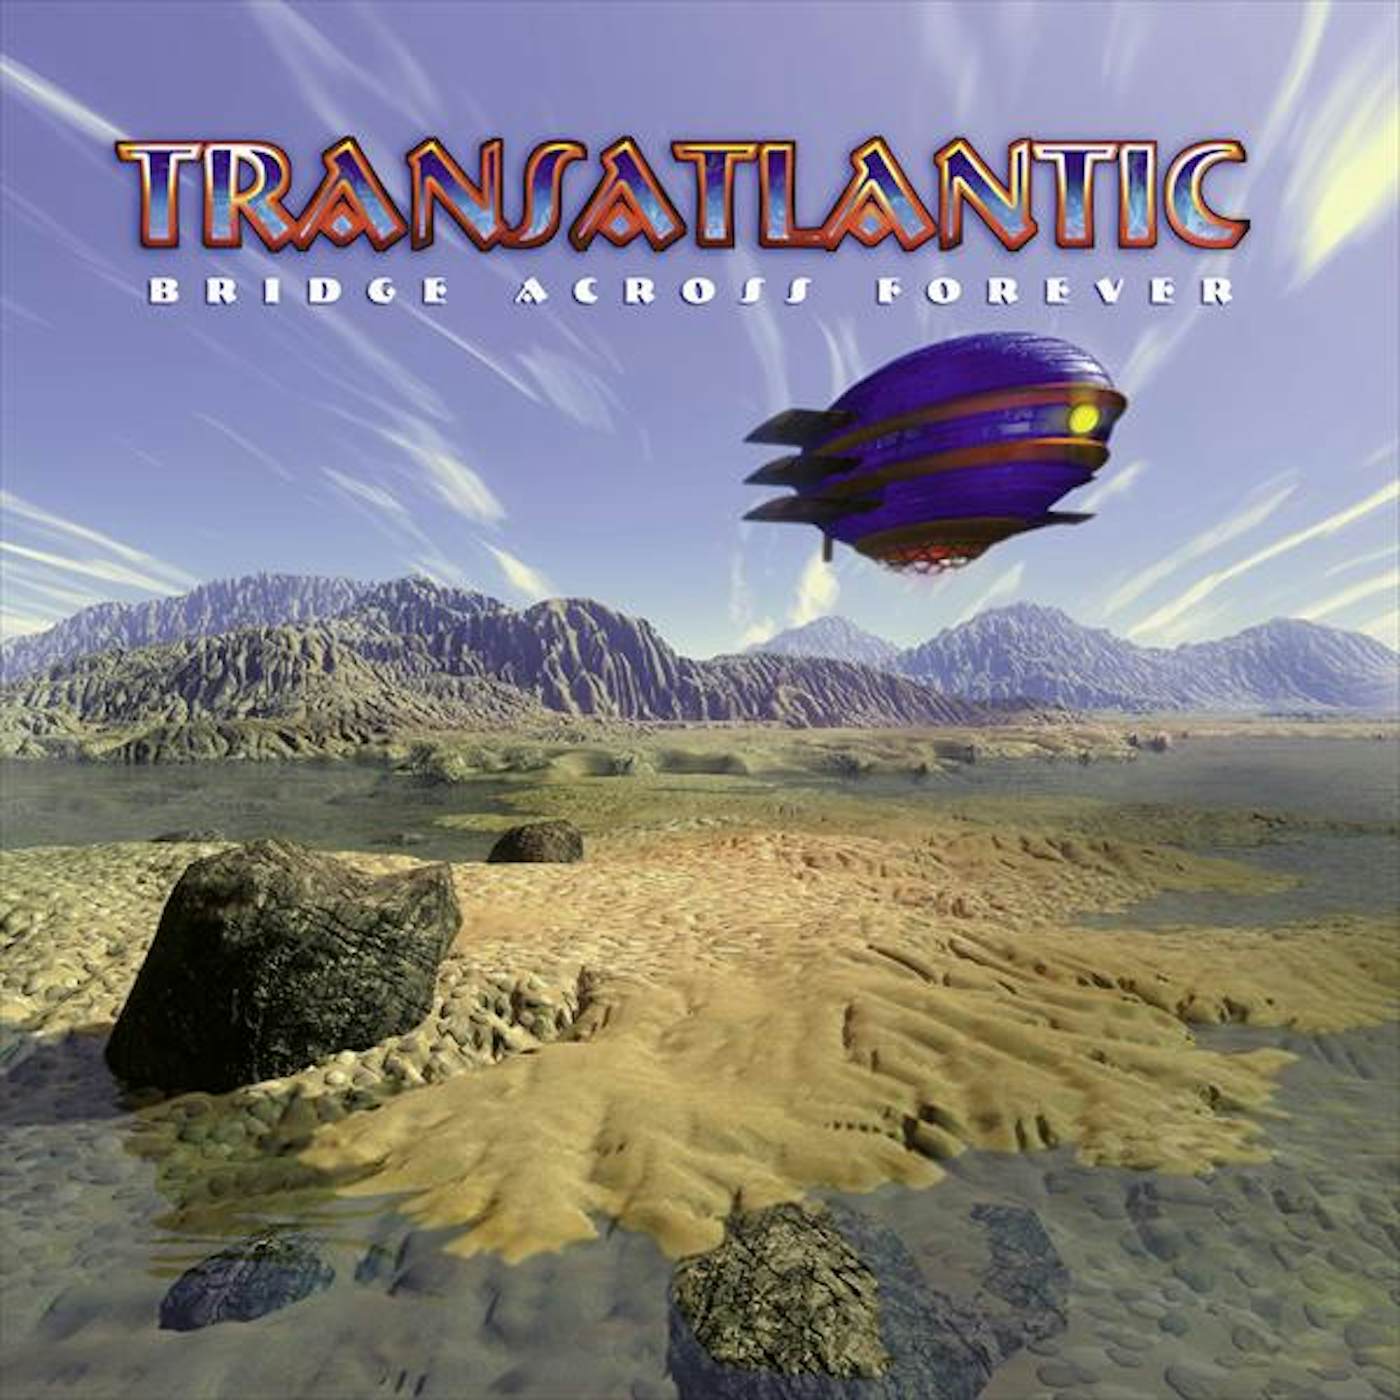 Transatlantic Bridge Across Forever Vinyl Record